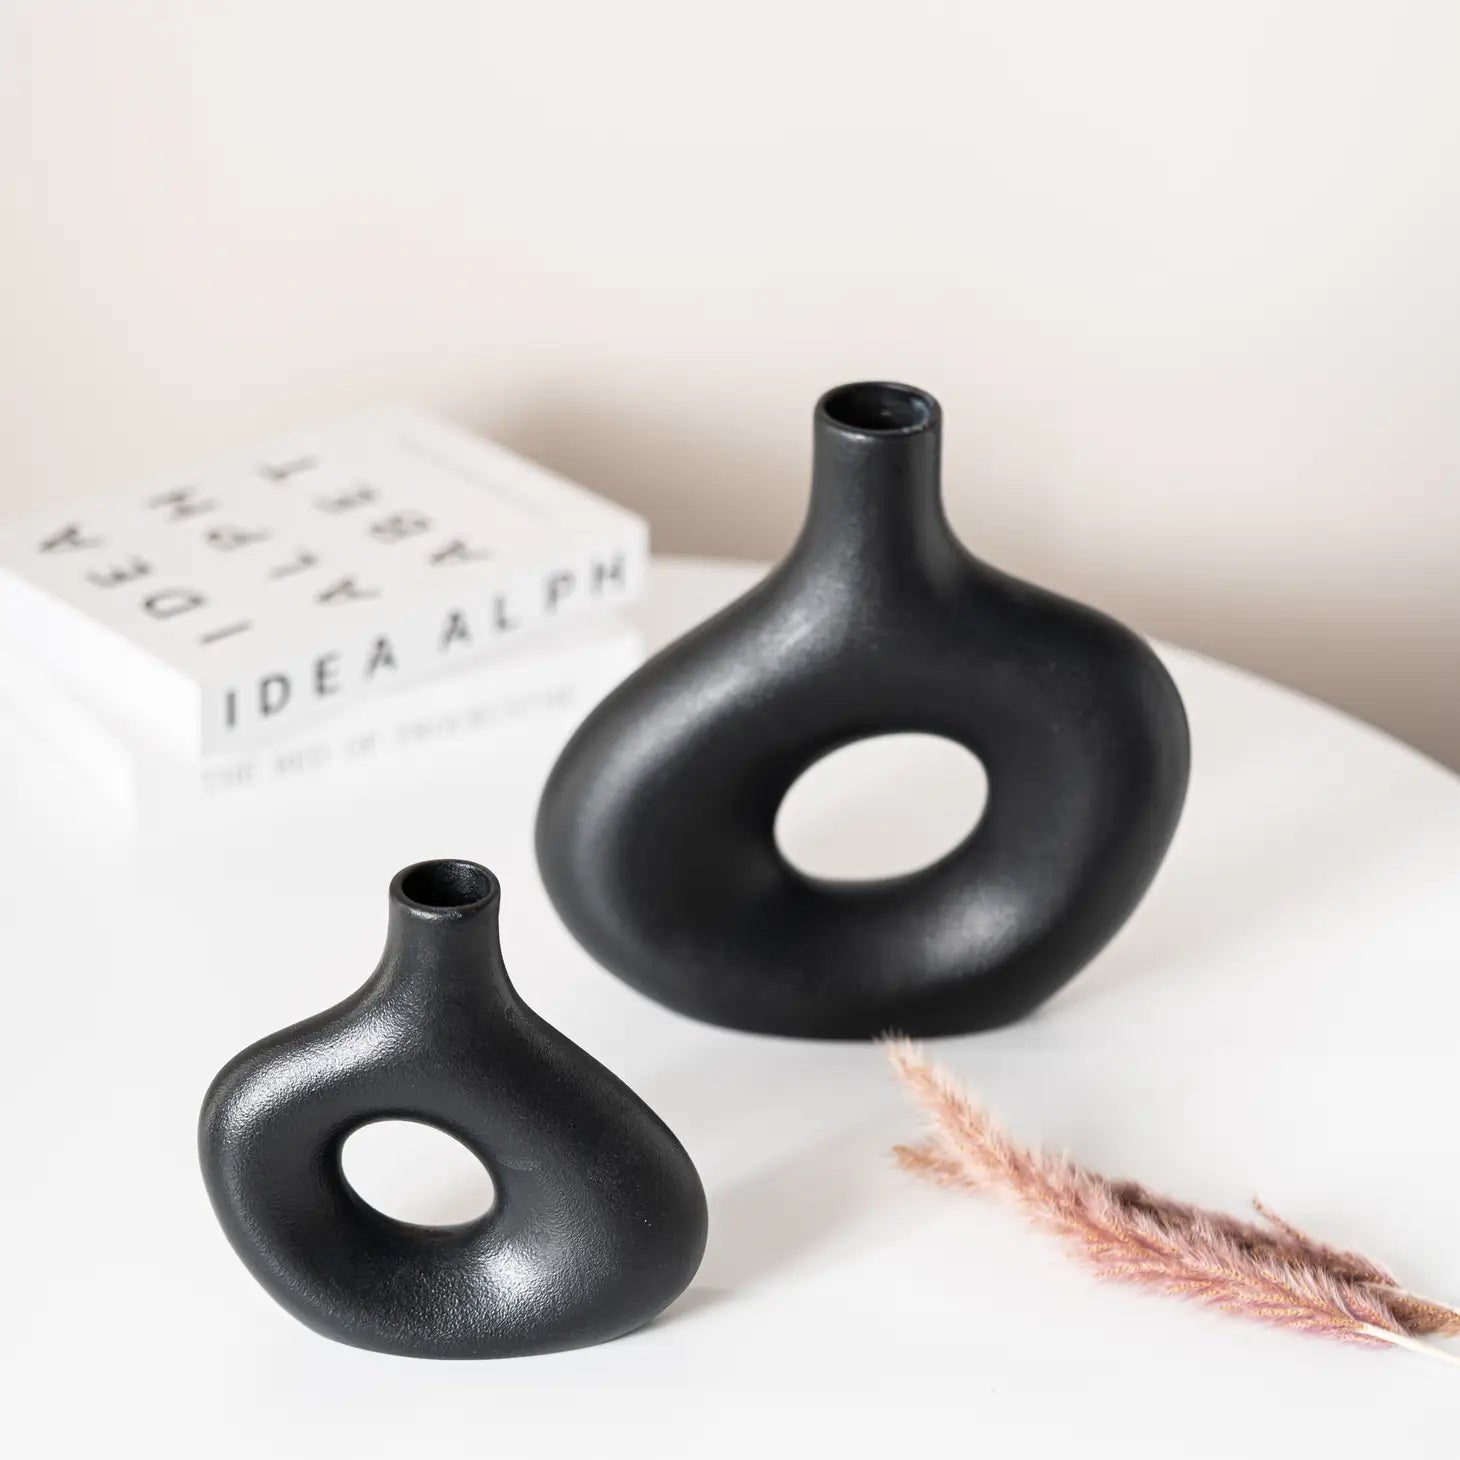 set of 2 black ceramic hollow vases